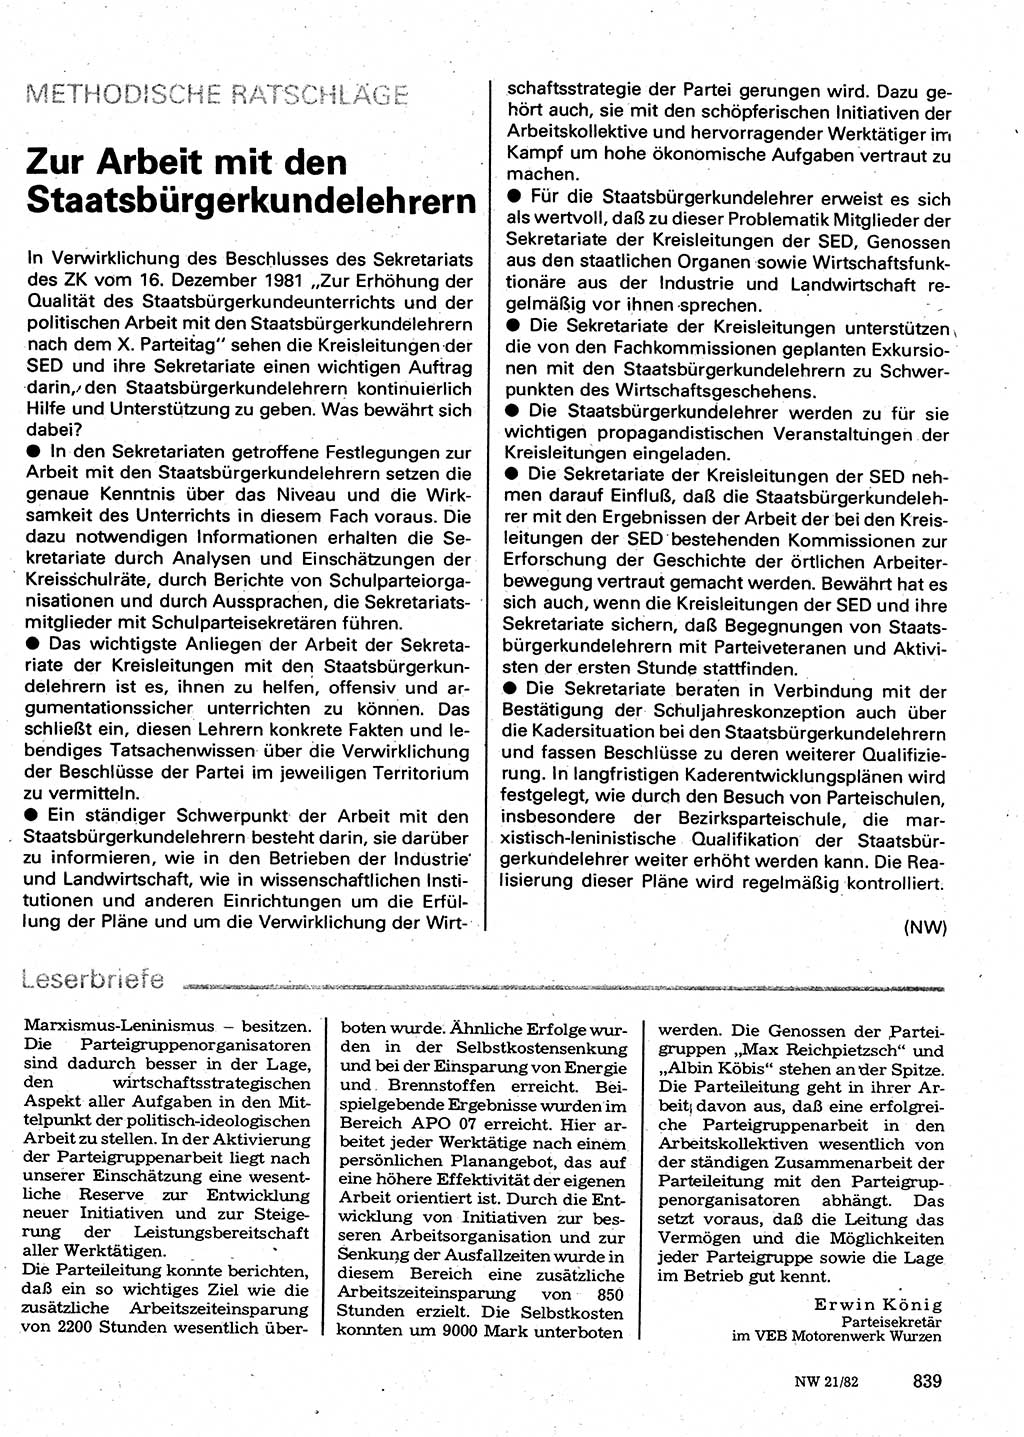 Neuer Weg (NW), Organ des Zentralkomitees (ZK) der SED (Sozialistische Einheitspartei Deutschlands) für Fragen des Parteilebens, 37. Jahrgang [Deutsche Demokratische Republik (DDR)] 1982, Seite 839 (NW ZK SED DDR 1982, S. 839)